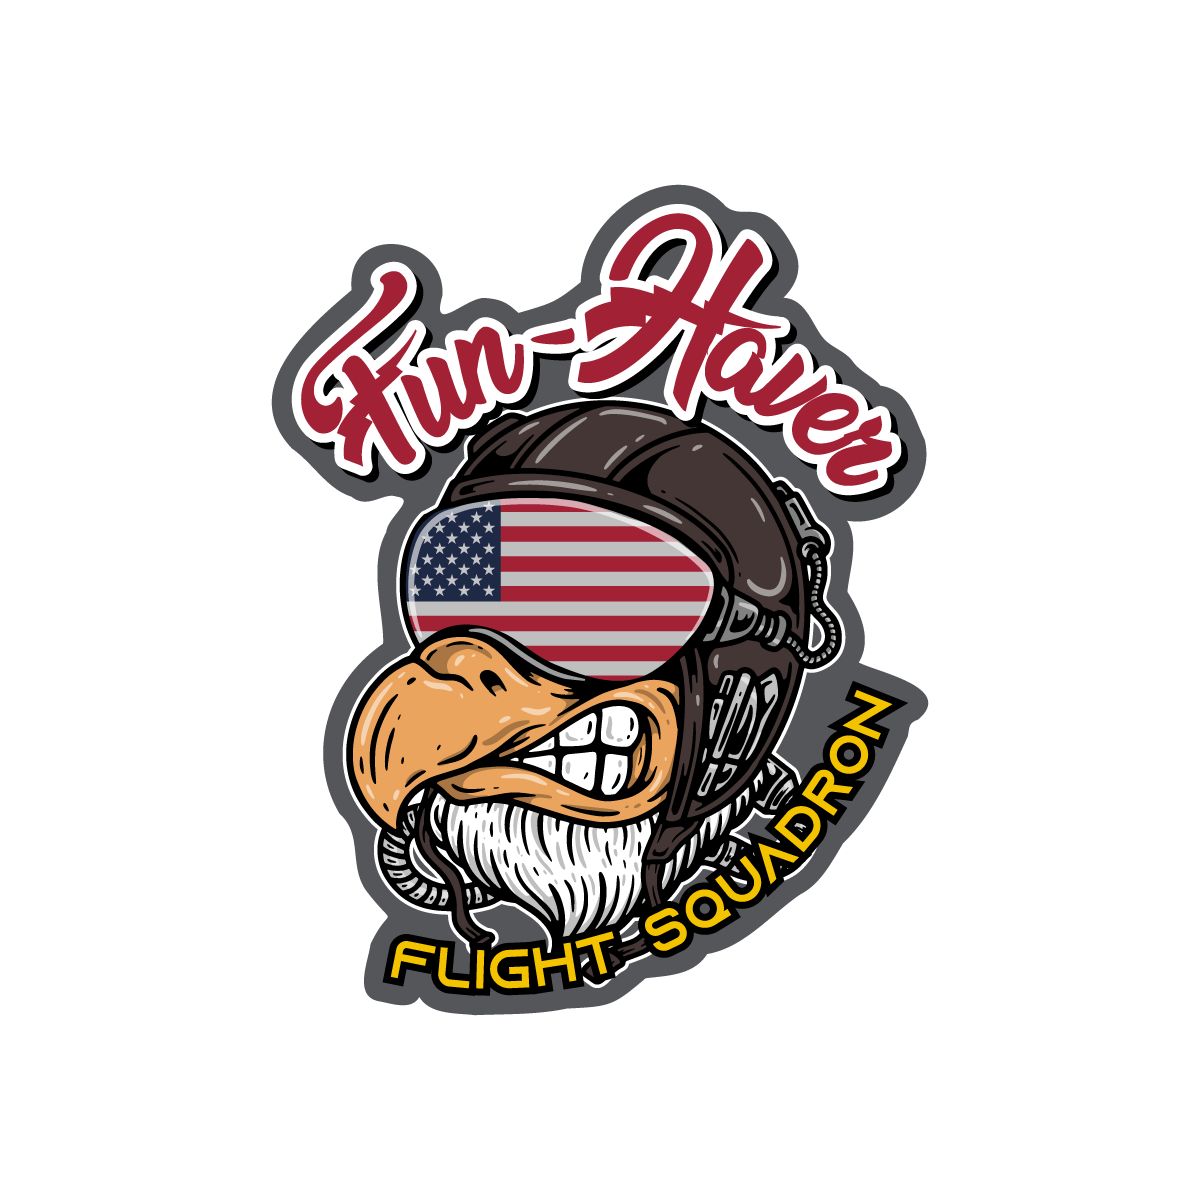 Fun-Haver Flight Squadron Sticker